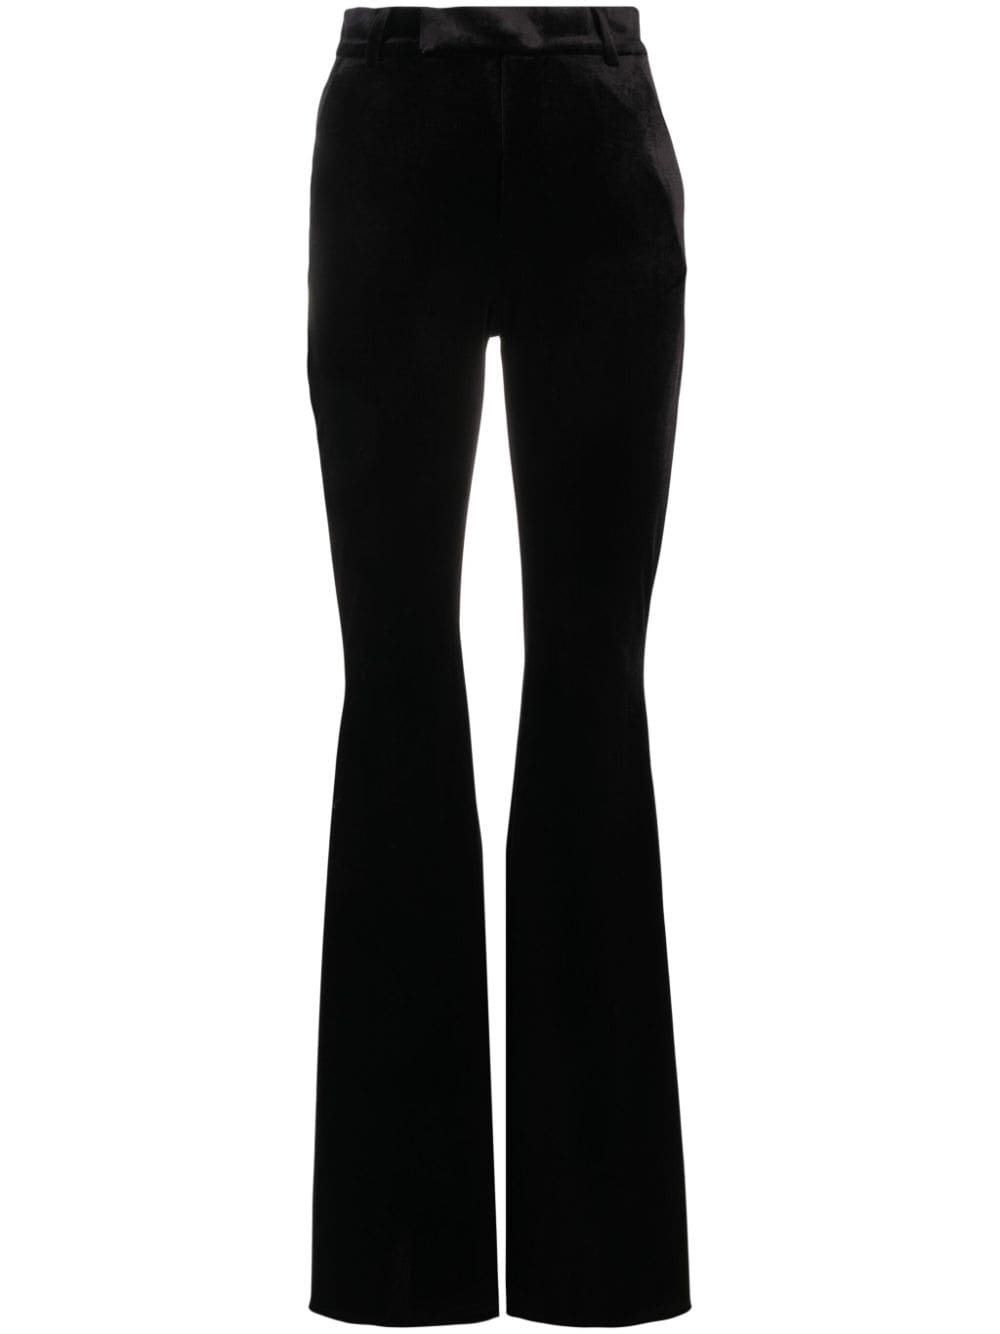 The New Arrivals Ilkyaz Ozel Colette Velvet Flared Trousers In Black